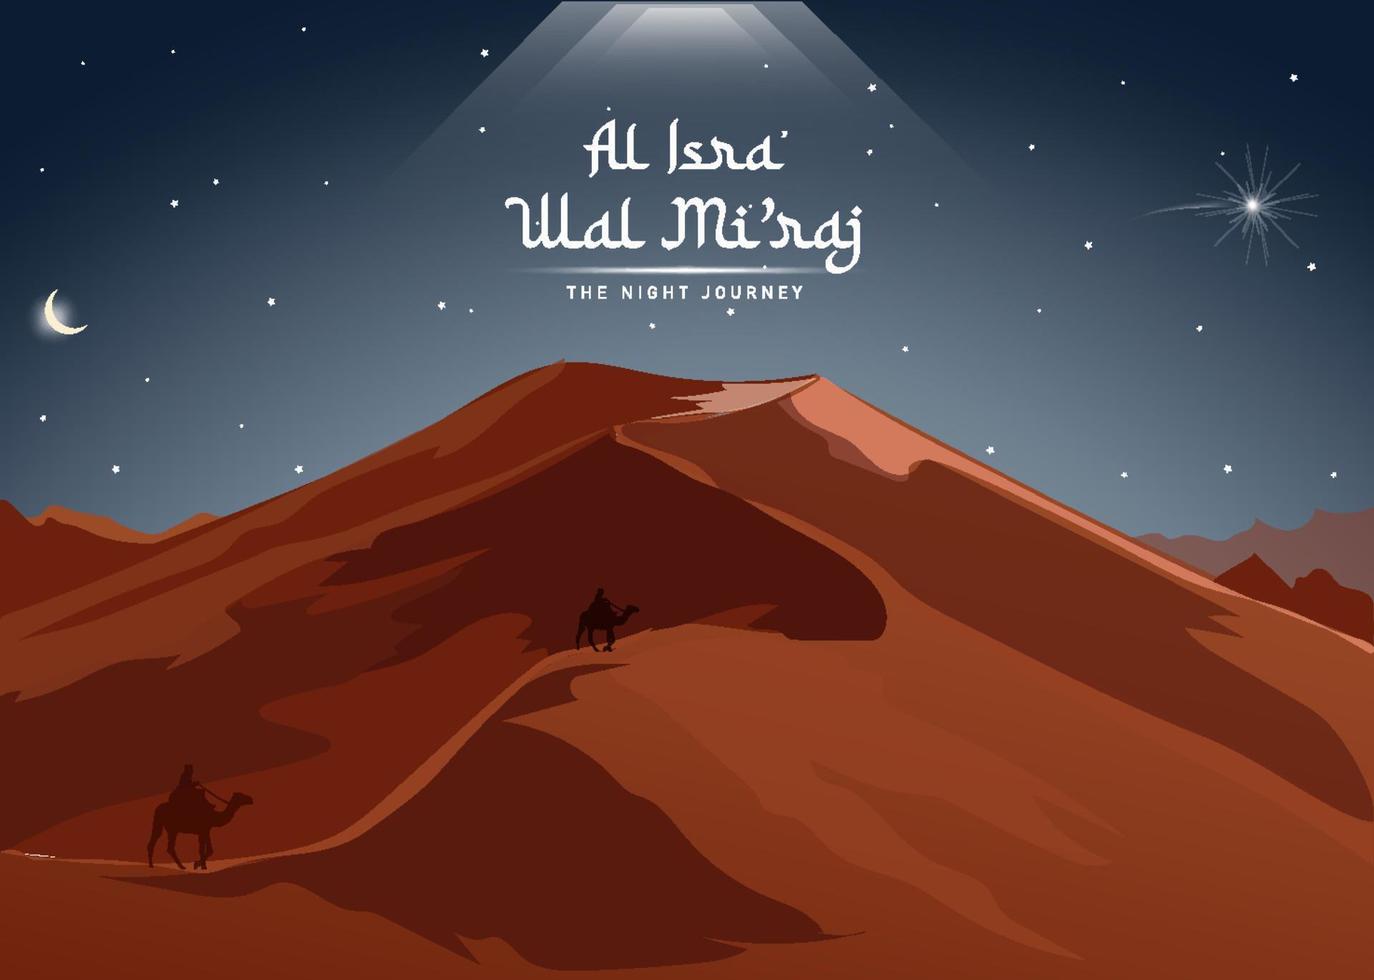 voyage nocturne du prophète muhammad al-isra' wal mi'raj. modèle de conception de fond islamique avec illustration 3d d'une silhouette d'un voyageur avec un chameau dans le désert, illustration vectorielle vecteur